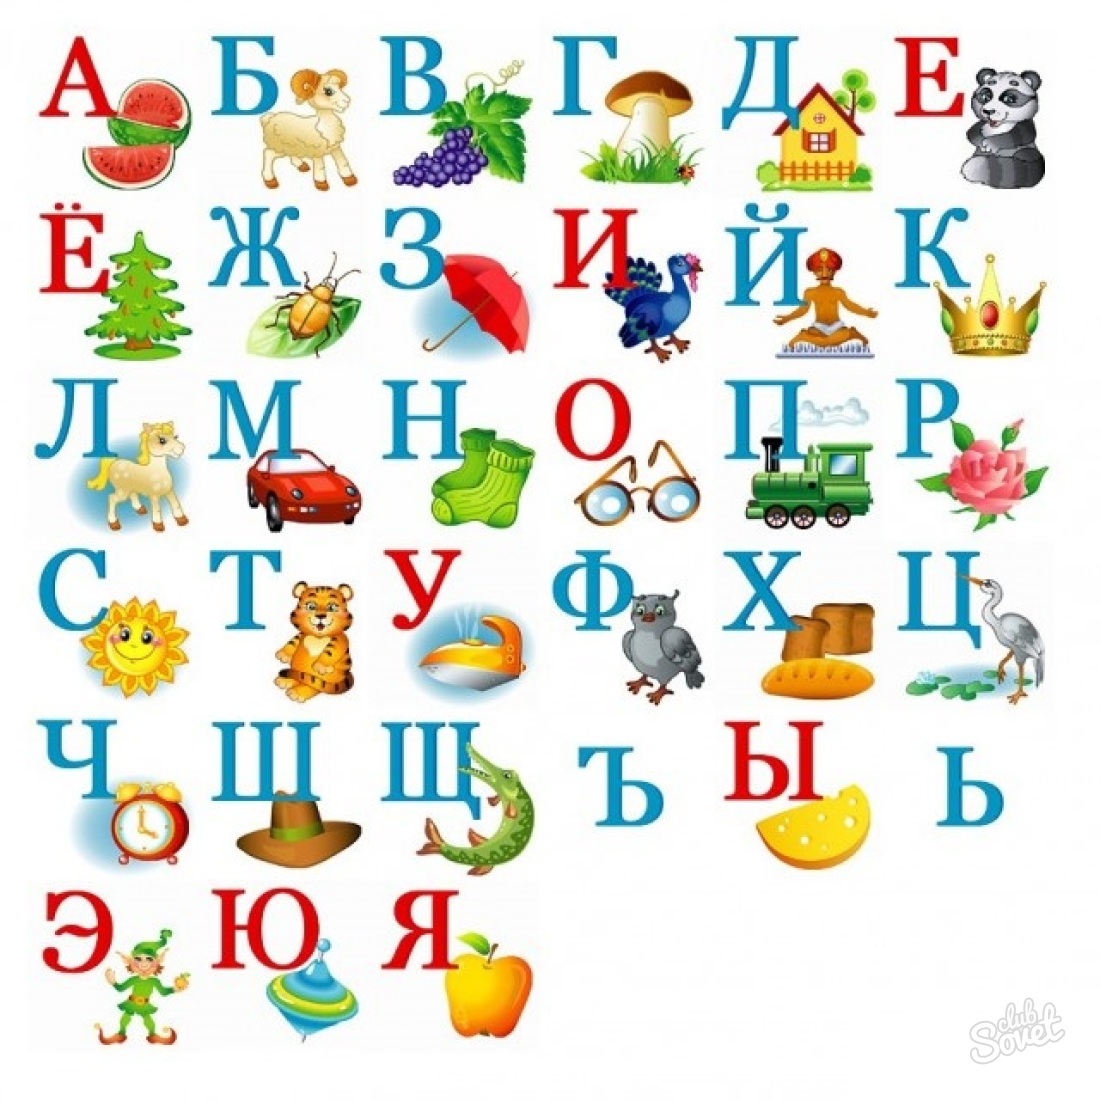 Come imparare l'alfabeto con il bambino